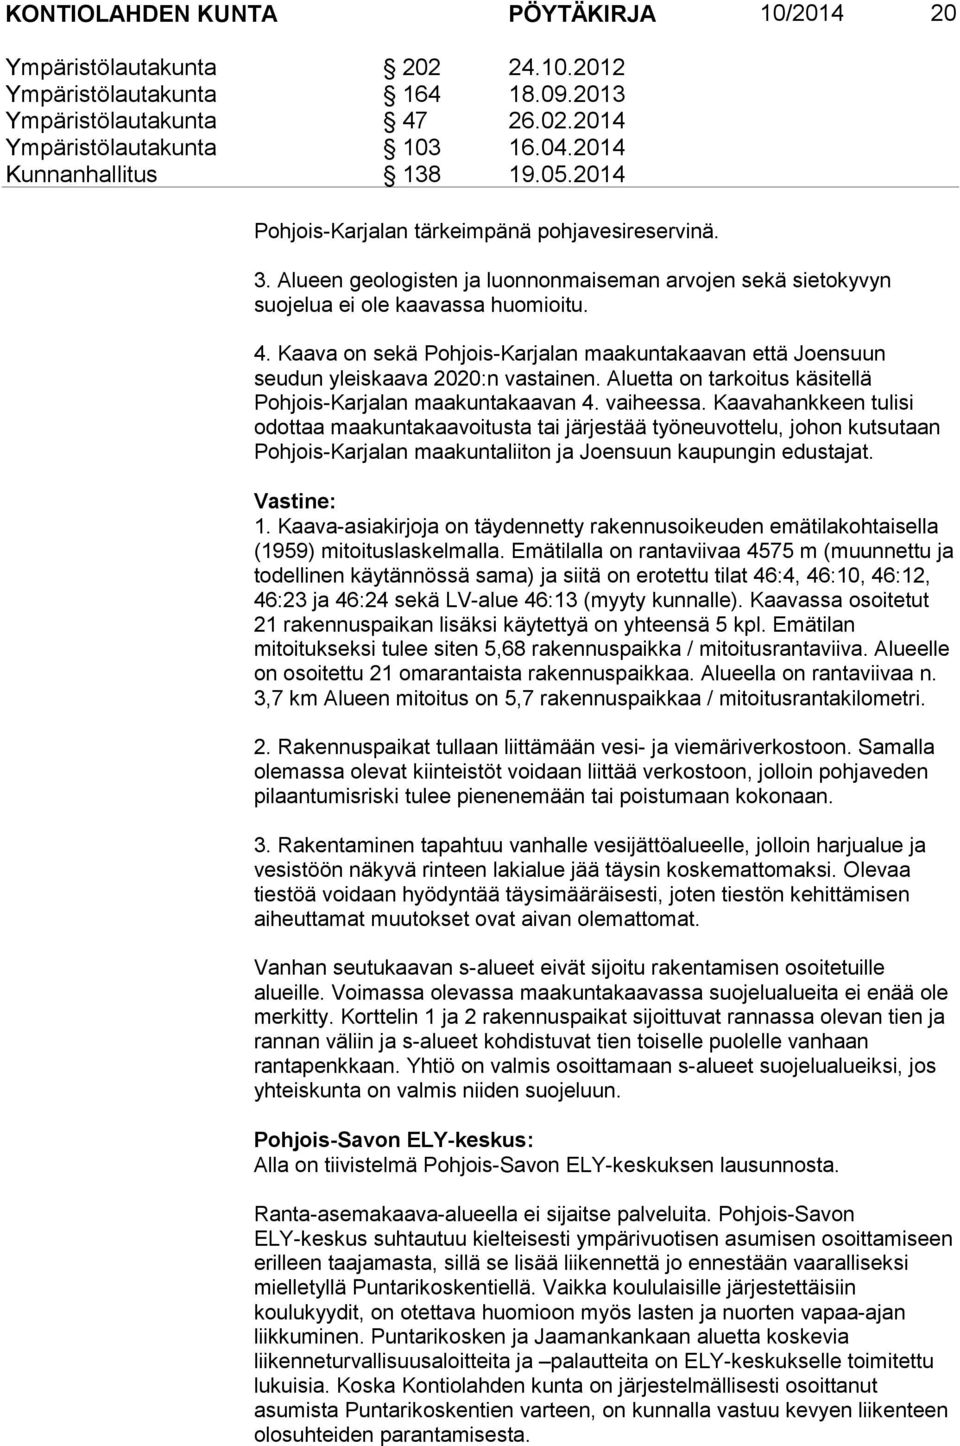 Kaava on sekä Pohjois-Karjalan maakuntakaavan että Joensuun seudun yleiskaava 2020:n vastainen. Aluetta on tarkoitus käsitellä Pohjois-Karjalan maakuntakaavan 4. vaiheessa.